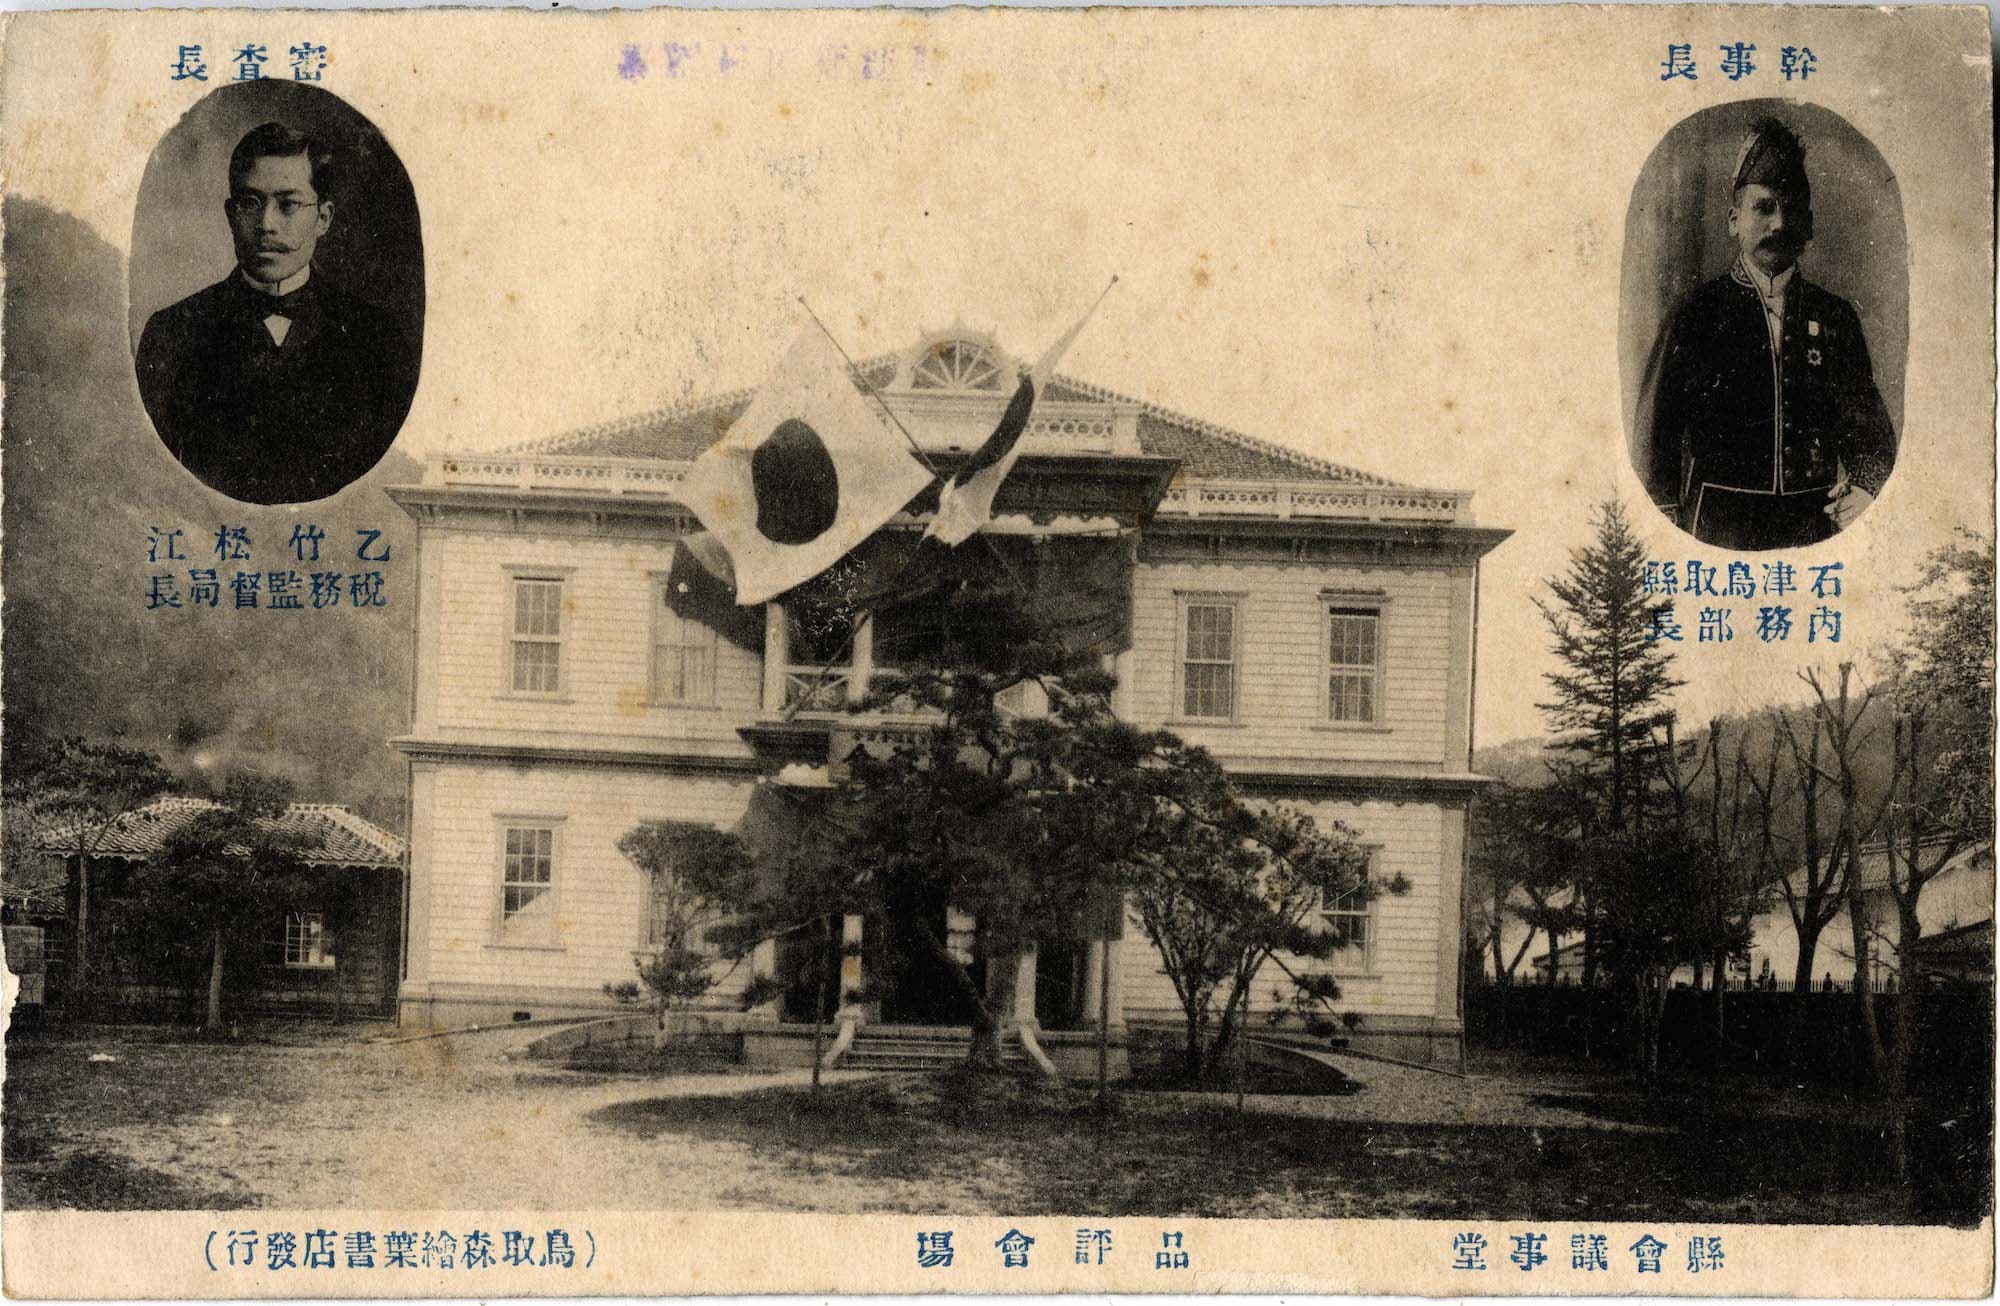 鳥取県会議事堂 / 県会議事堂's image 1